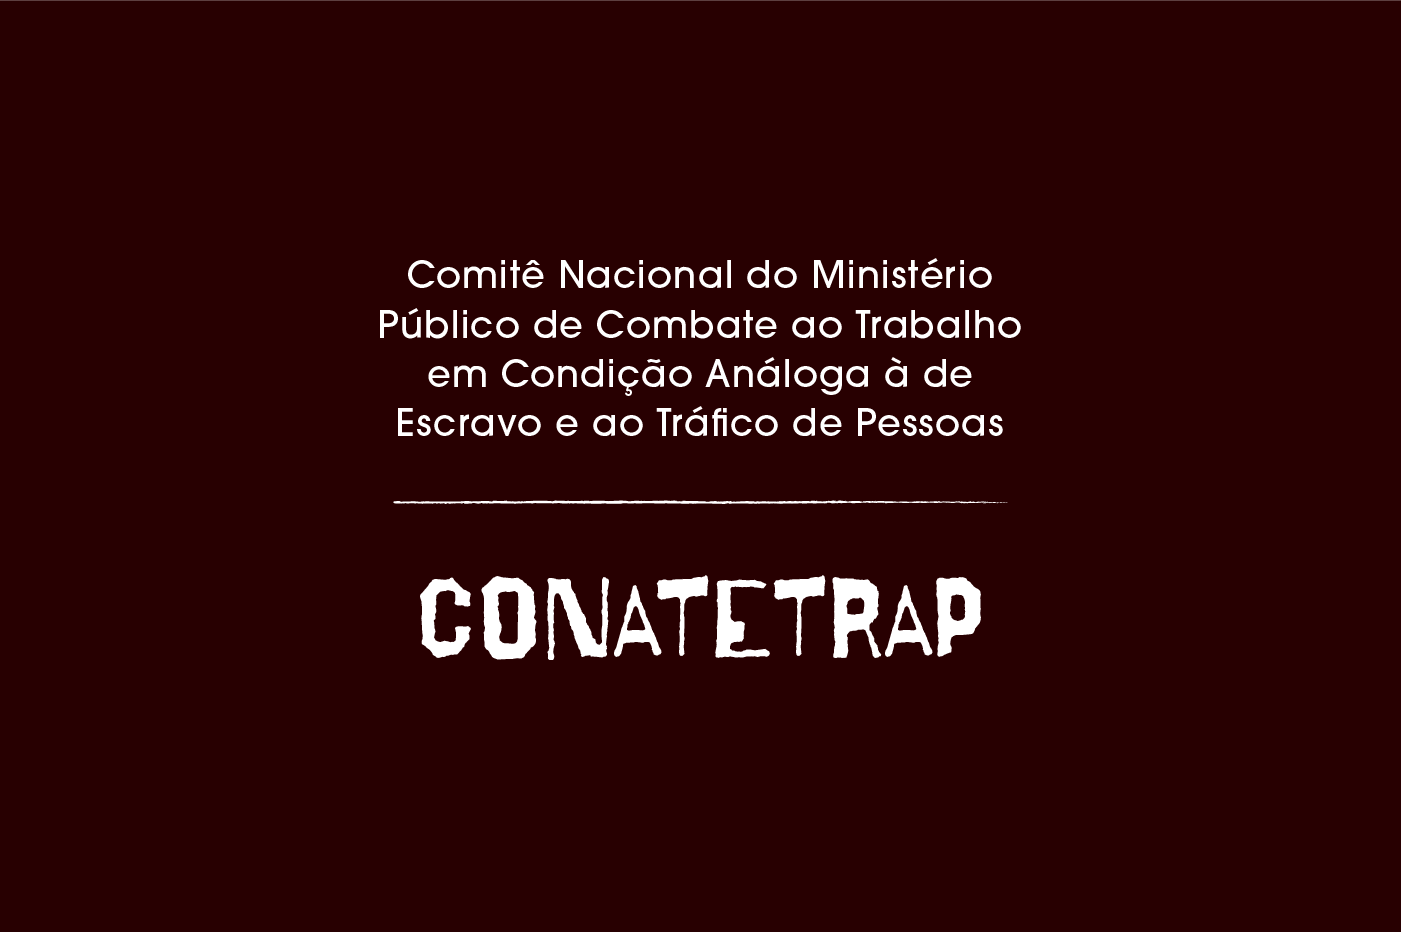 CONATETRAP_-_Desdobramento_de_peças_banner_noticia.png - 34,02 kB